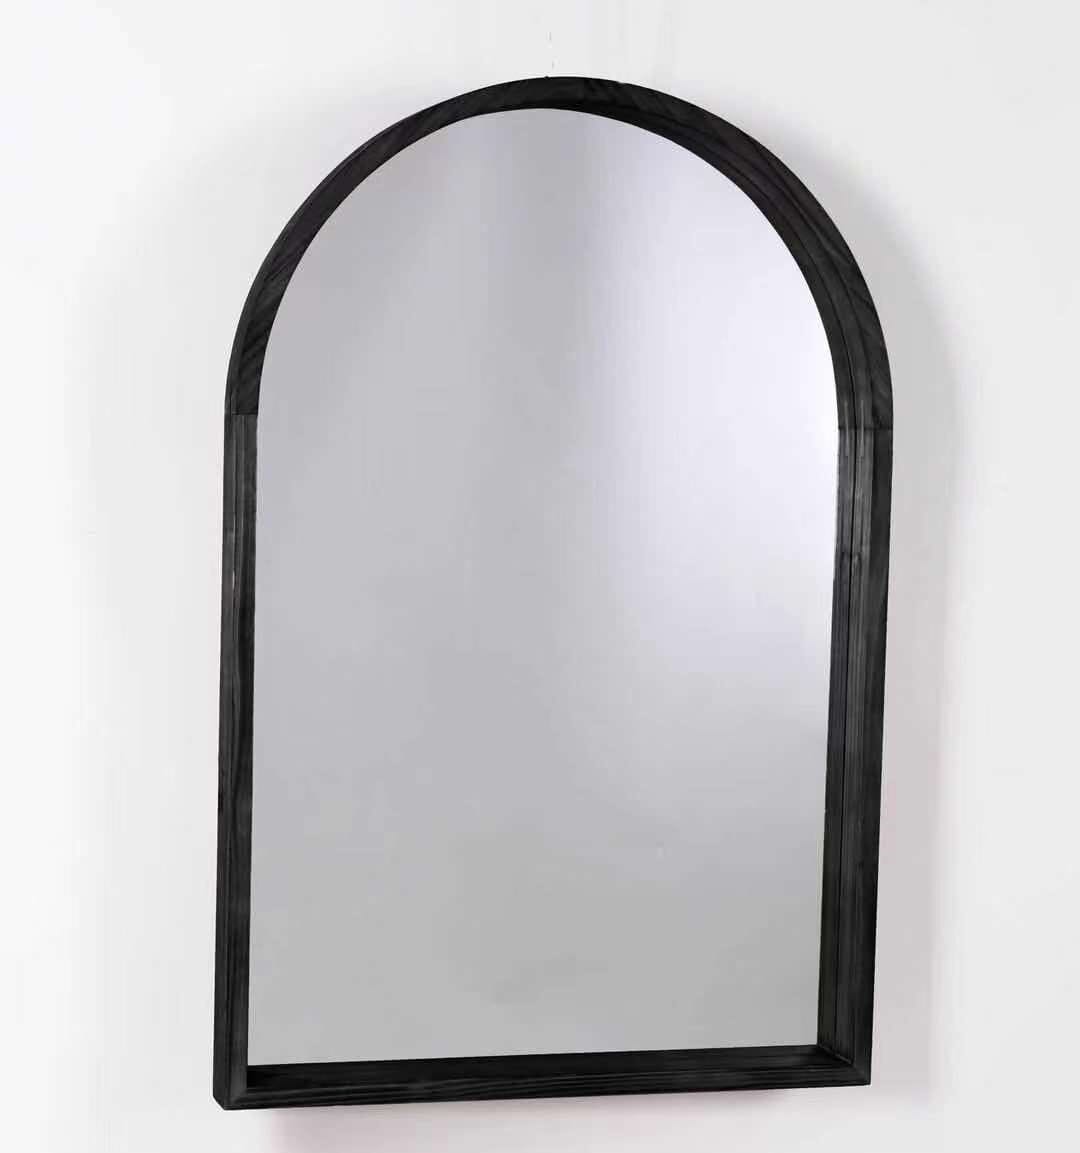 Gương tường kiểu vòm này sẽ làm cho bất kỳ căn phòng nào trở nên sang trọng và đẳng cấp. Với thiết kế hiện đại mà không kém phần cổ điển, chiếc gương này là điểm nhấn lý tưởng cho bức tường của bạn.